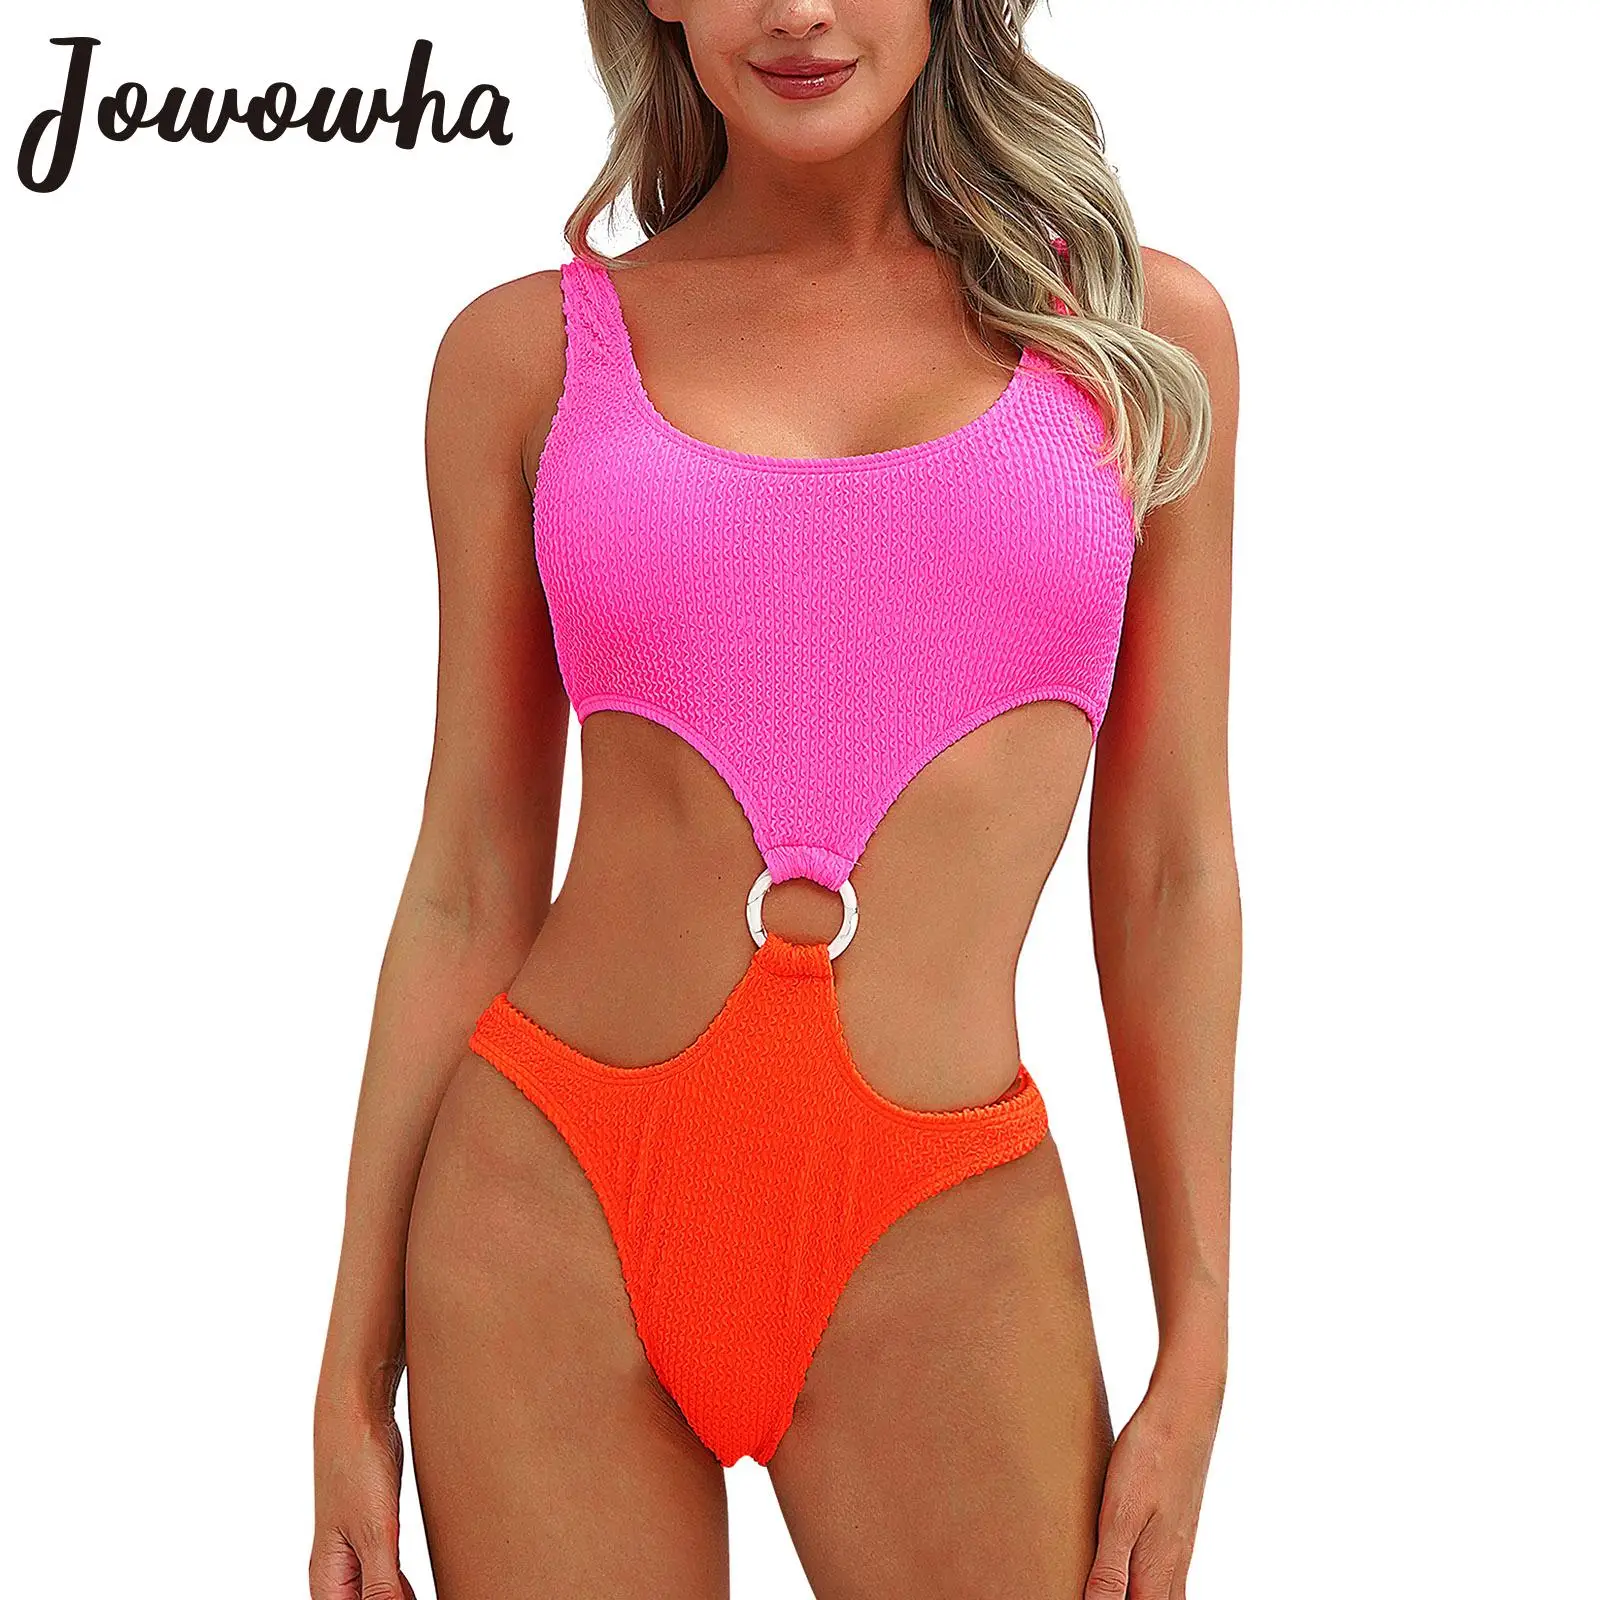 

Женский слитный купальник с цветными блоками, трико без рукавов, купальник, комбинезон, купальный костюм, пляжная одежда